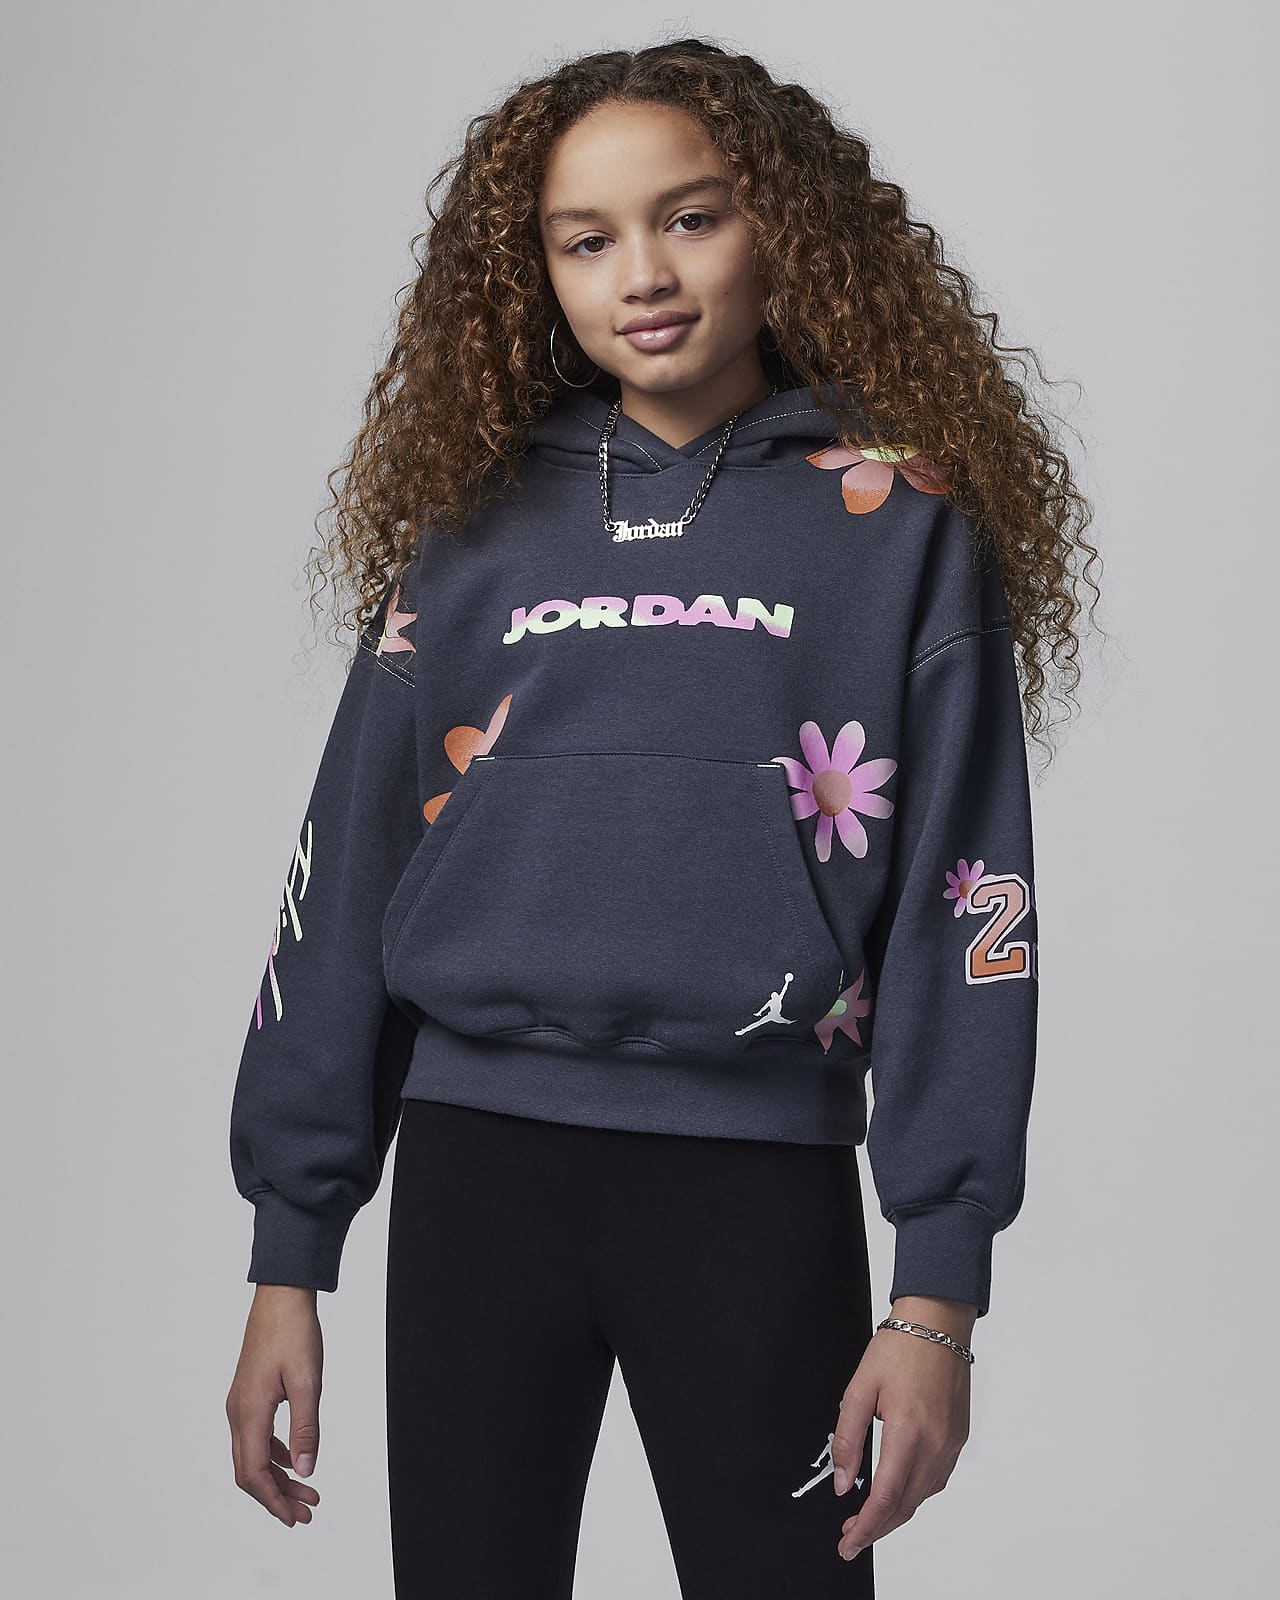 Μπλούζα με κουκούλα Jordan Deloris Jordan Flower για μεγάλα παιδιά